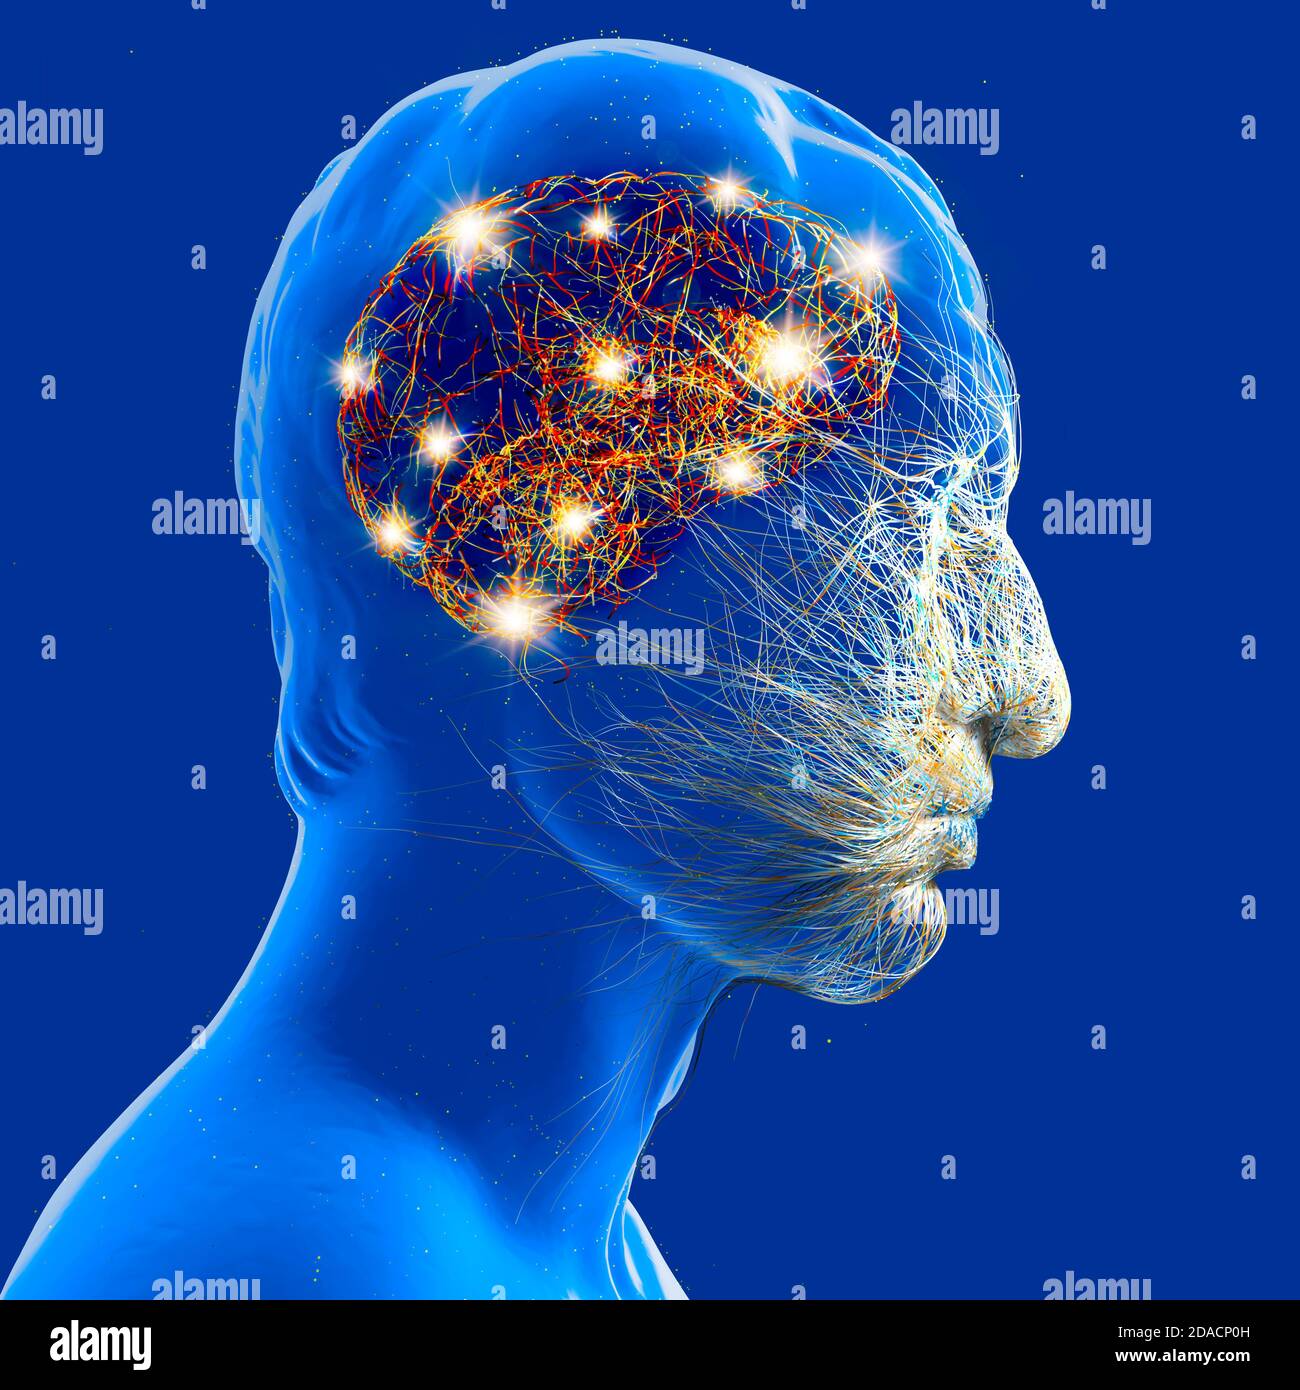 Neurologie, philosophie : connexions, développement de la pensée et de la réflexion, possibilités infinies du cerveau et de l'esprit. Anatomie humaine. Banque D'Images